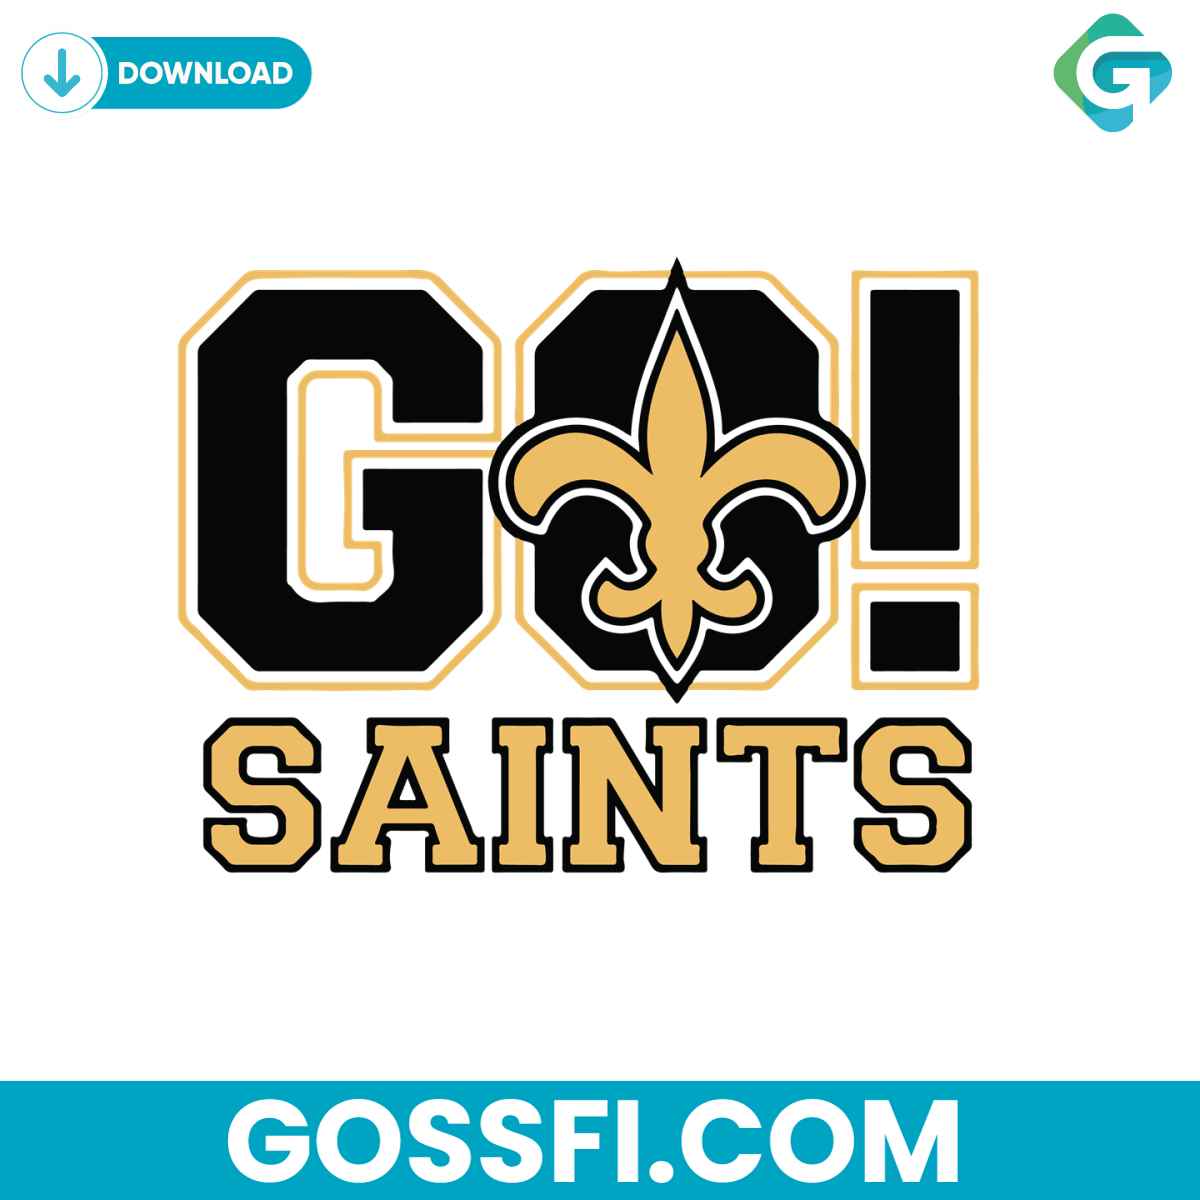 go-saints-logo-svg-digital-download